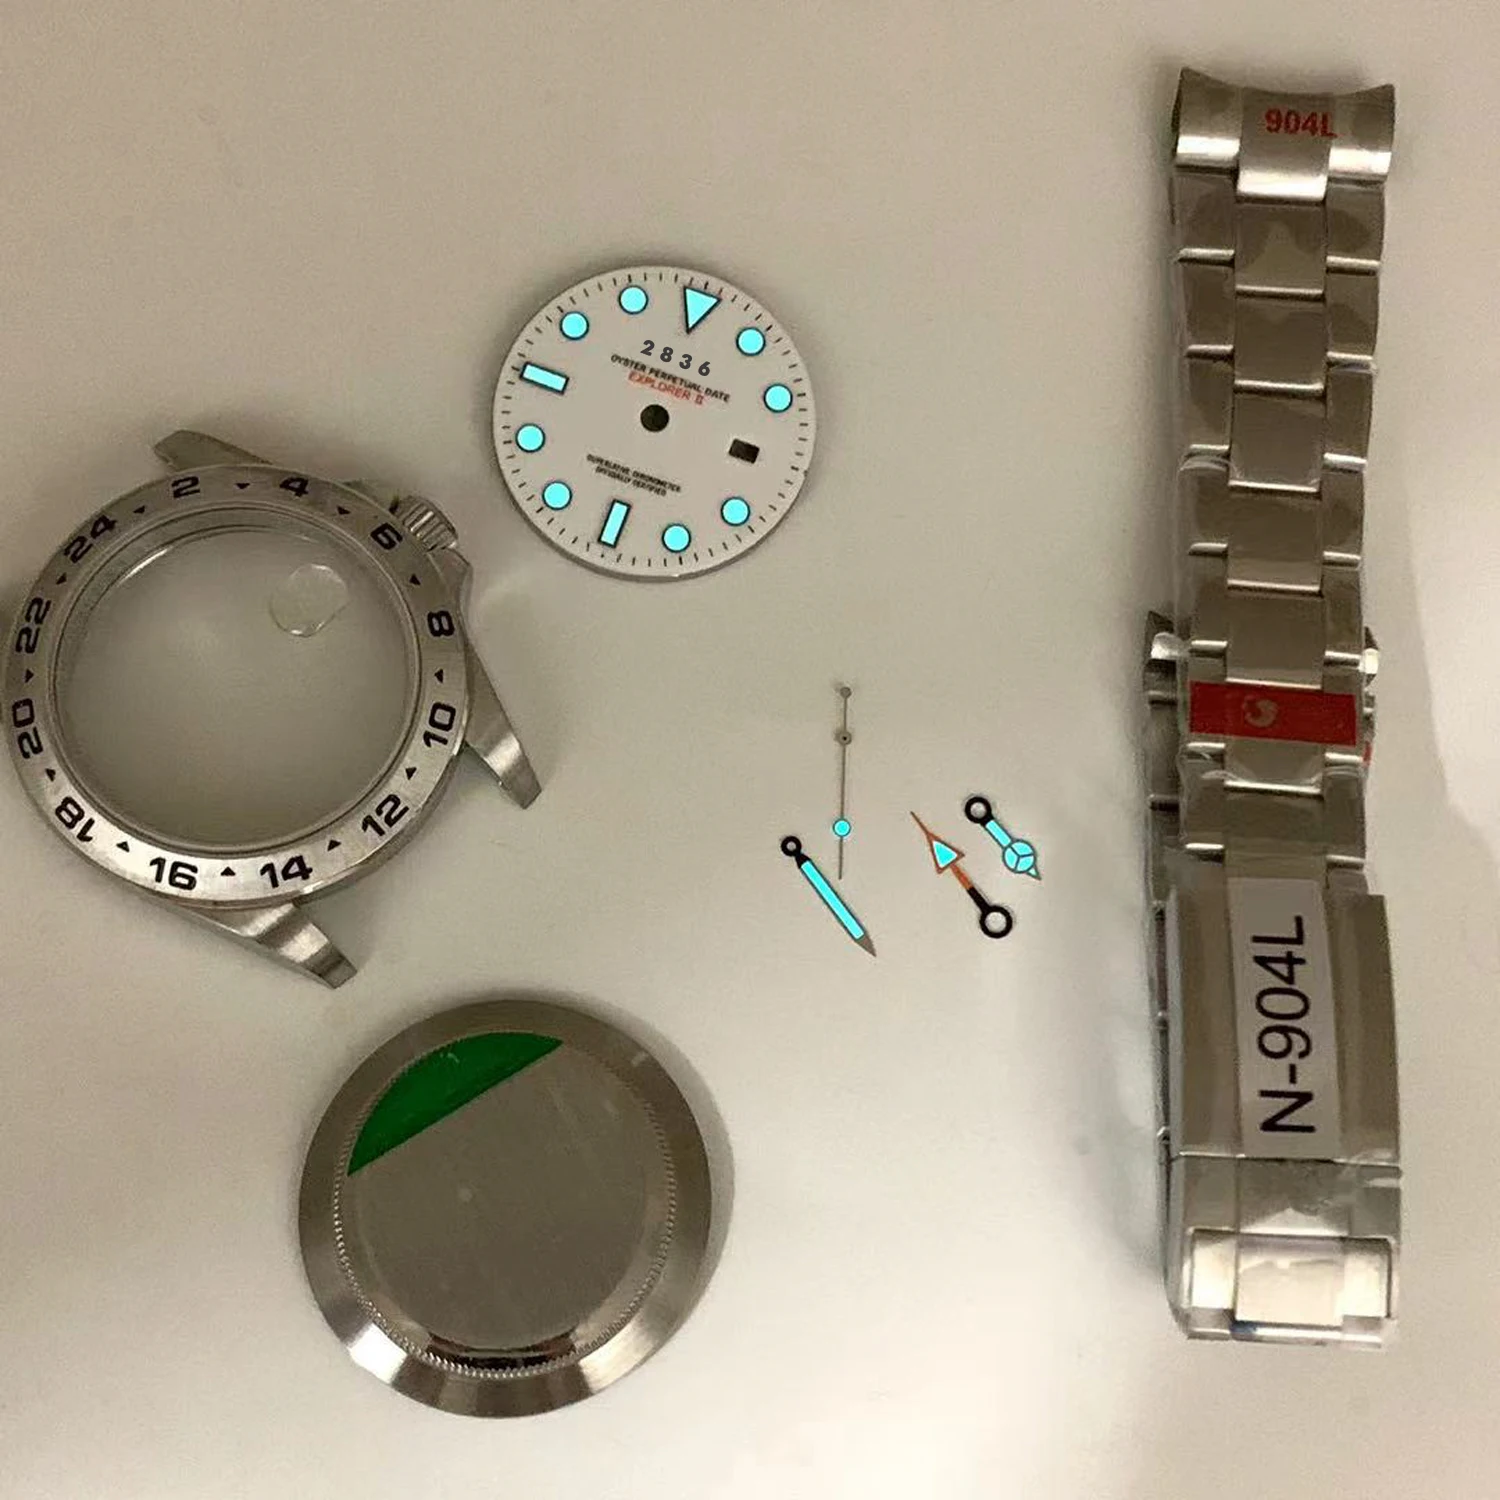 Caja de reloj, piezas de acero, 904l, 4 manecillas, Gmt, explorer 2, 2836